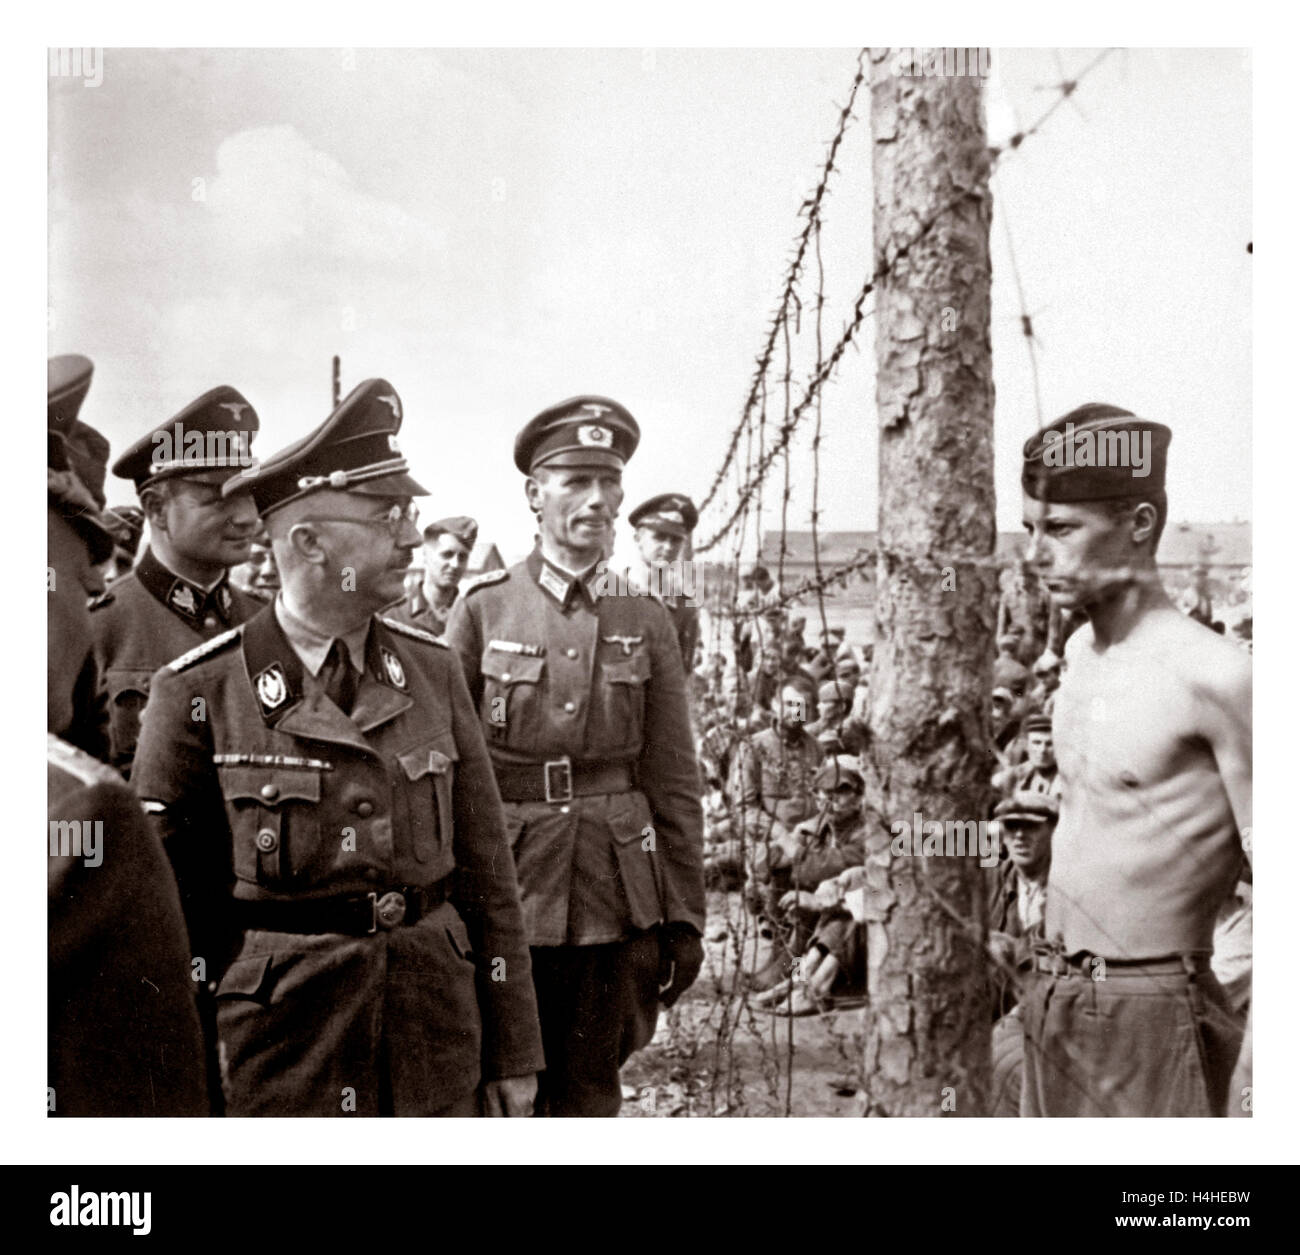 Deutschen Nazi-Führer Heinrich Himmler in Uniform inspiziert ein WW2-des-Kriegsgefangenenlager in Russland 1940 Stockfoto